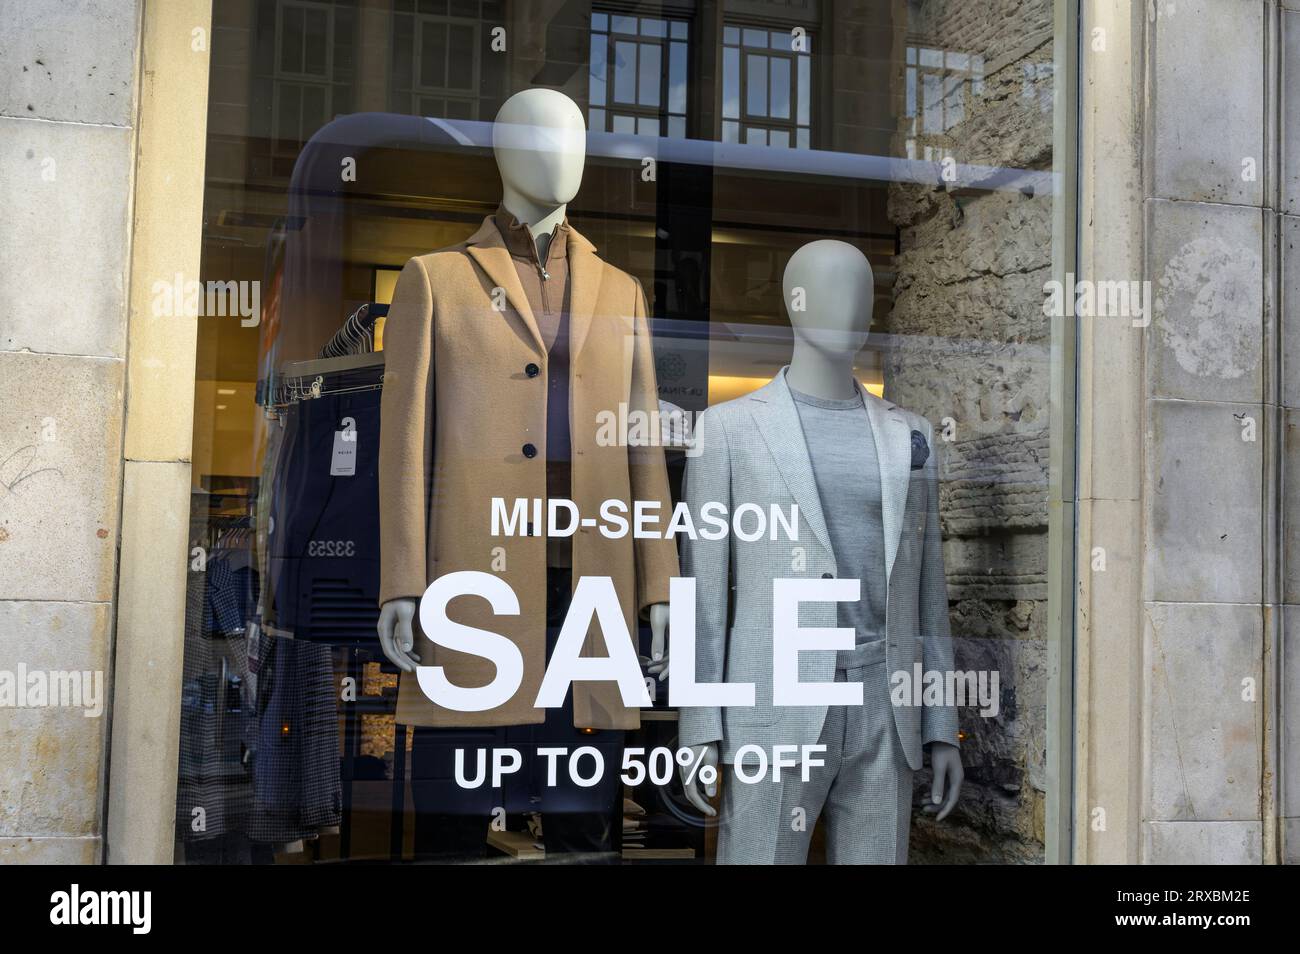 Soldes de mi-saison jusqu'à 50% de rabais sur le signe dans une vitrine affichant des vêtements pour hommes, Glasgow, Écosse, Royaume-Uni , Europe Banque D'Images